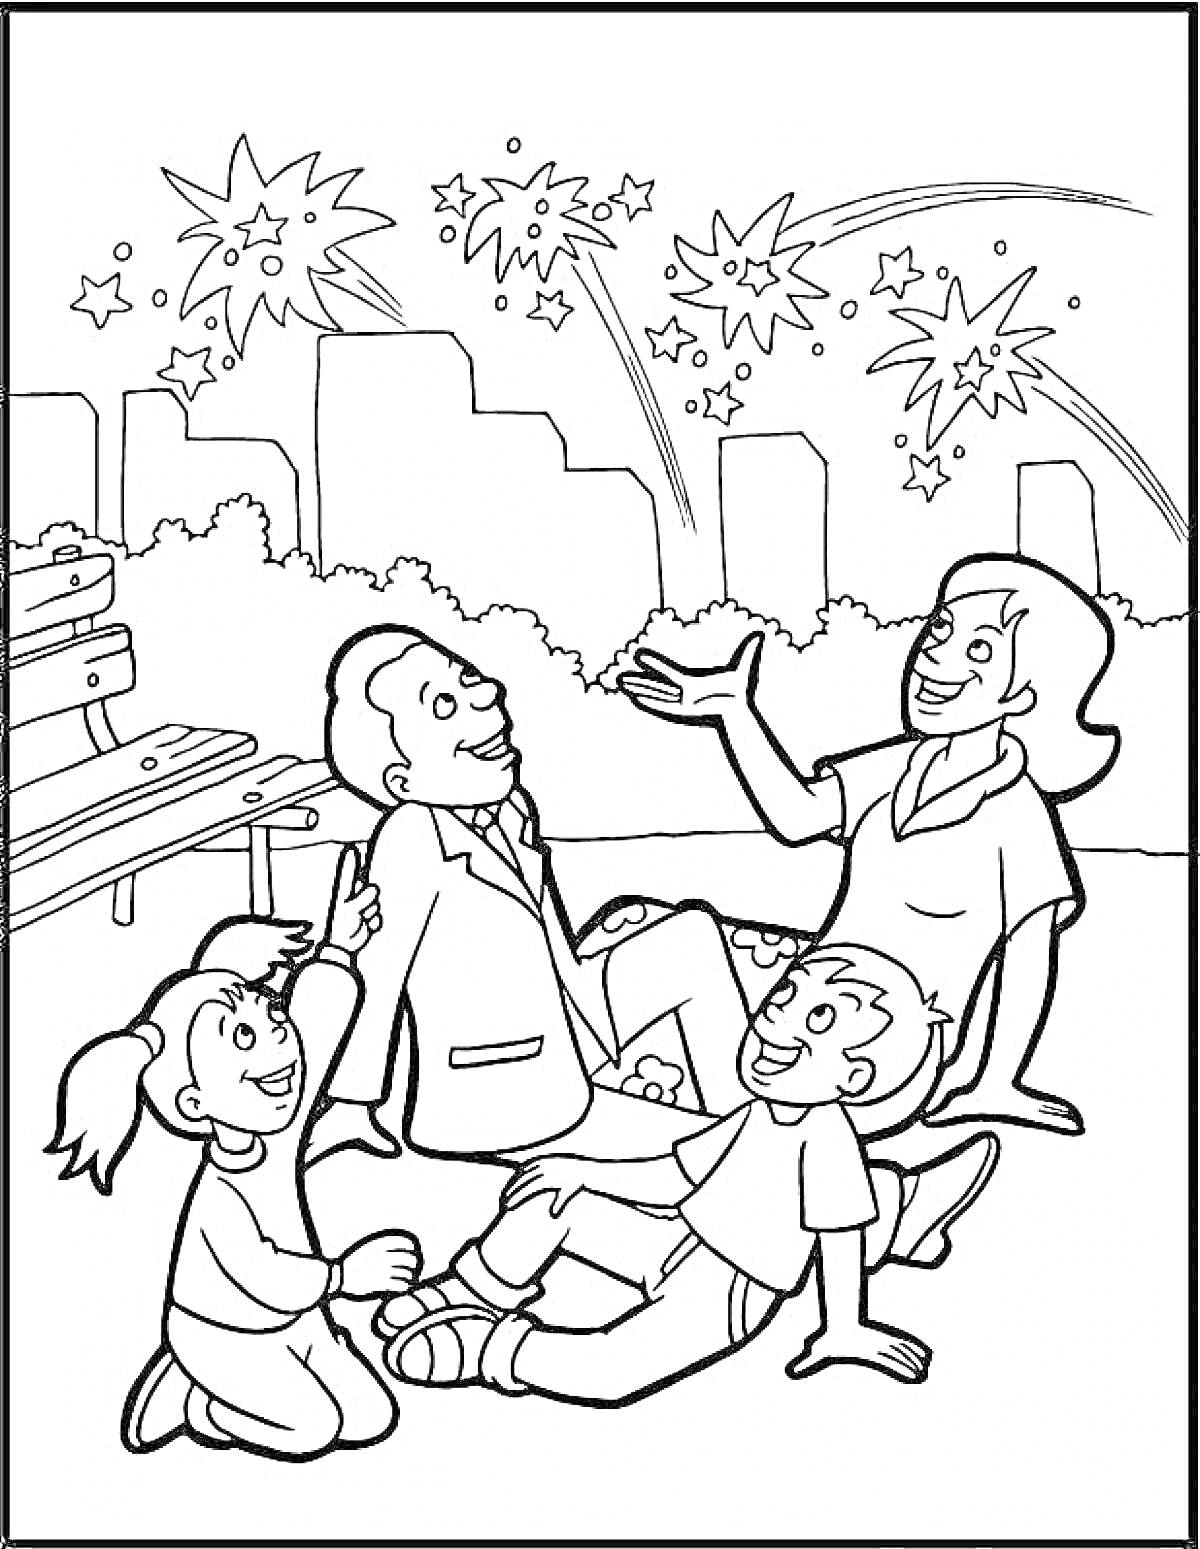 Раскраска Семья на скамейке, наблюдающая салют на День Победы (взрослый мужчина, женщина, двое детей, городские здания, деревья, скамейка, фейерверк)